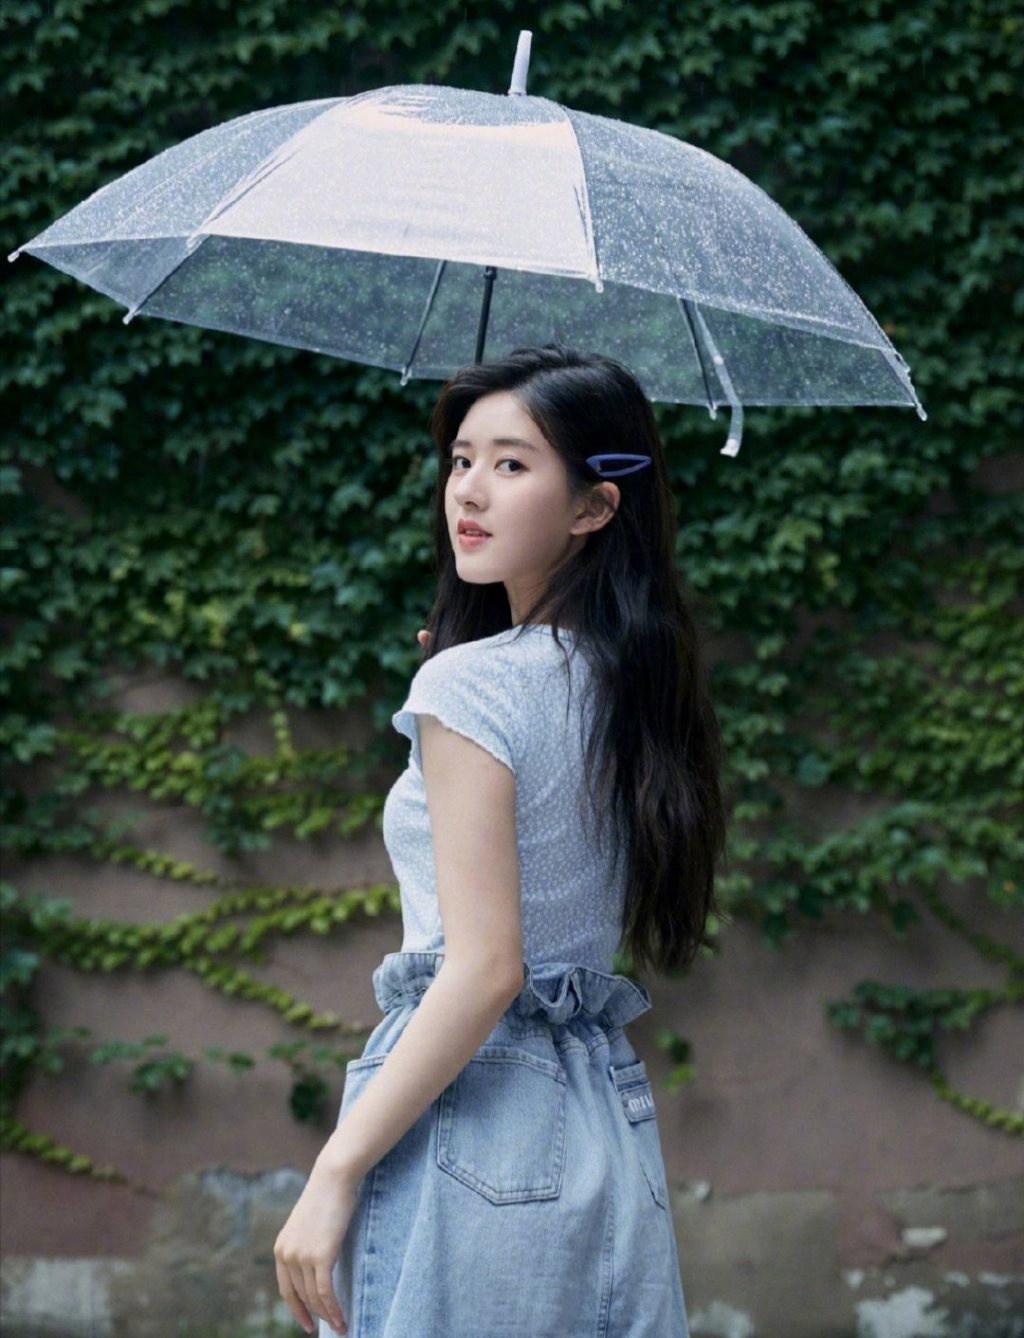 赵露思分享的一组打伞在雨中的照片,整体造型简洁具有少女风情